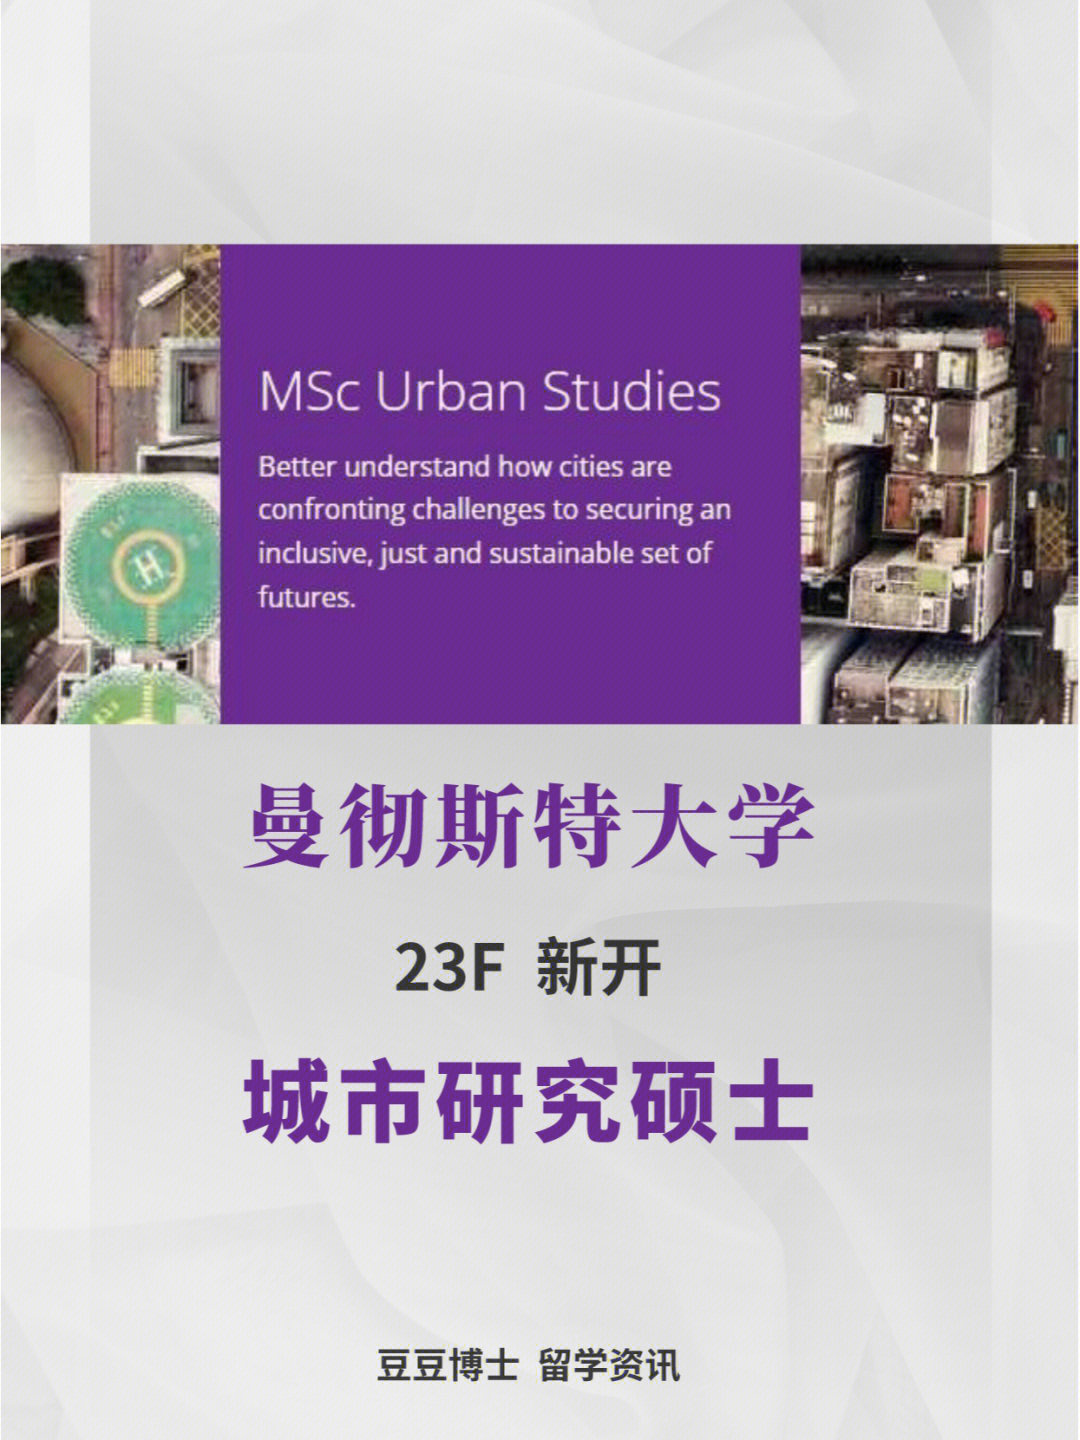 曼彻斯特大学本次申请季再次推出全新硕士项目,城市研究硕士(msc